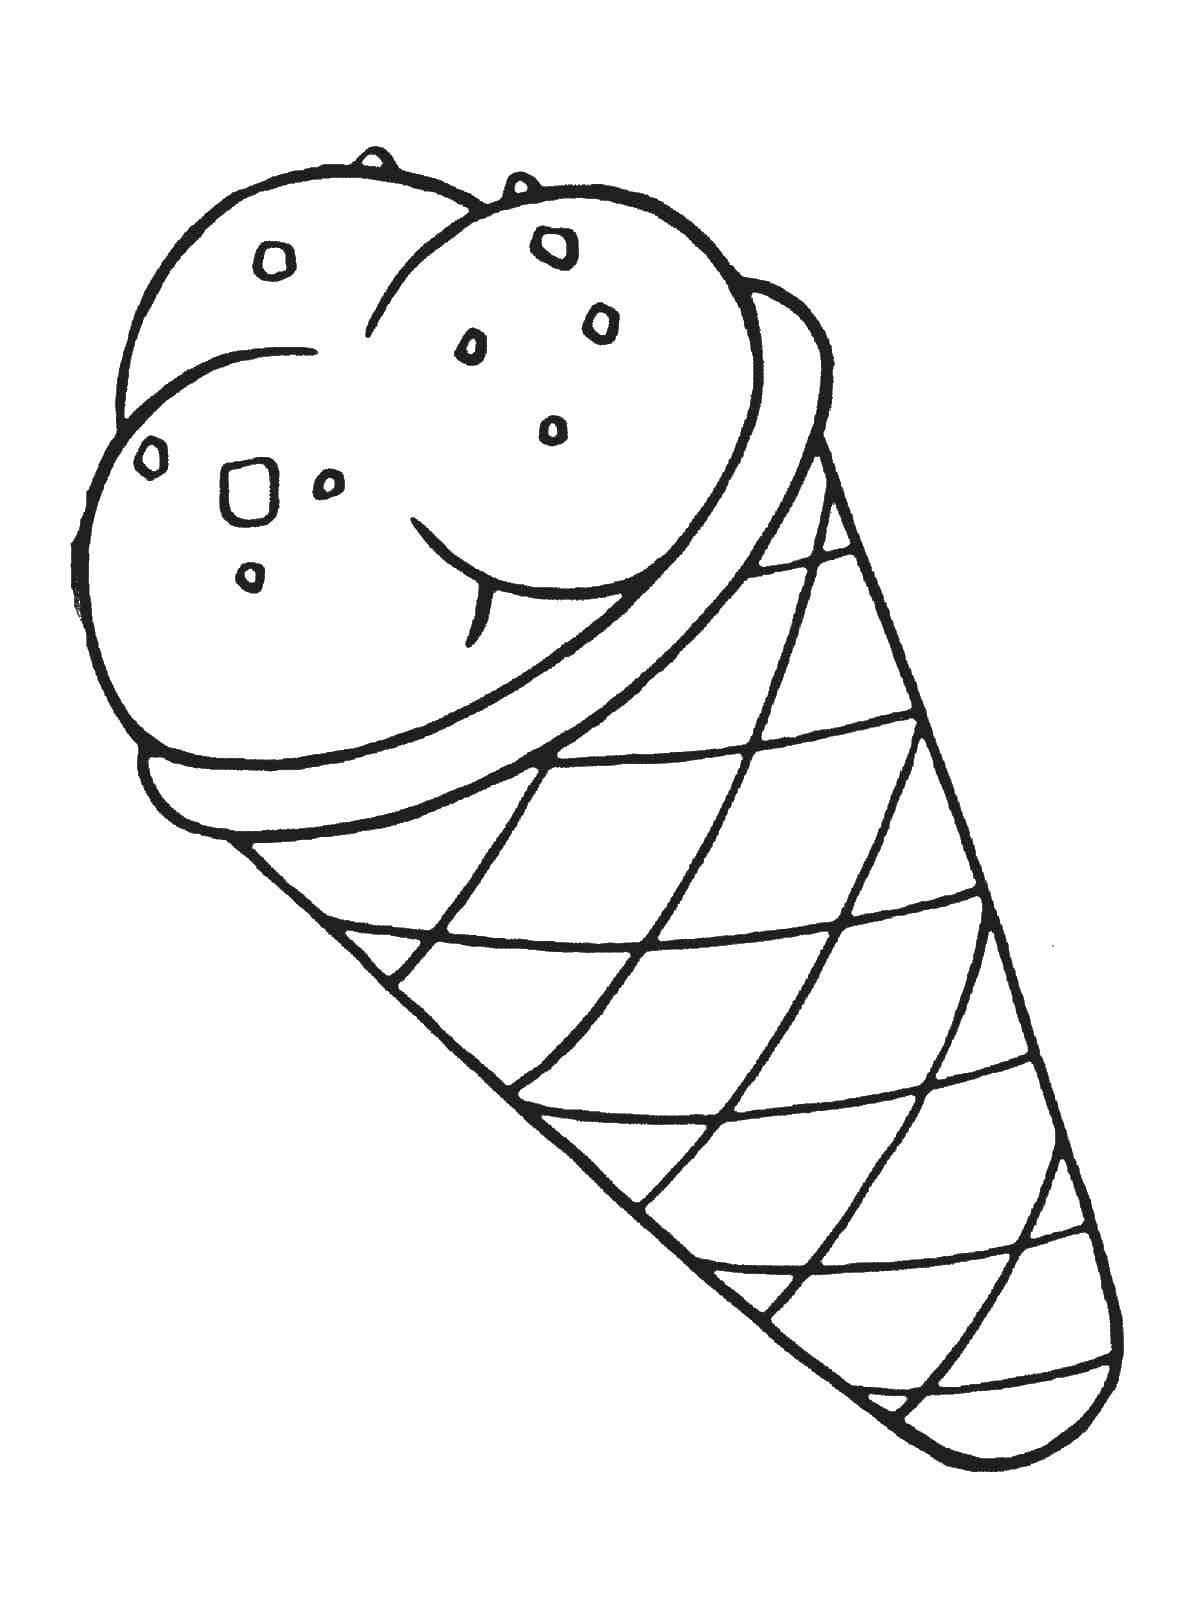 Раскраска мороженое. Мороженое картинка для детей раскраска. Сладости. Раскраска. Еда картинки для детей раскраски. Картинки раскраски легкие